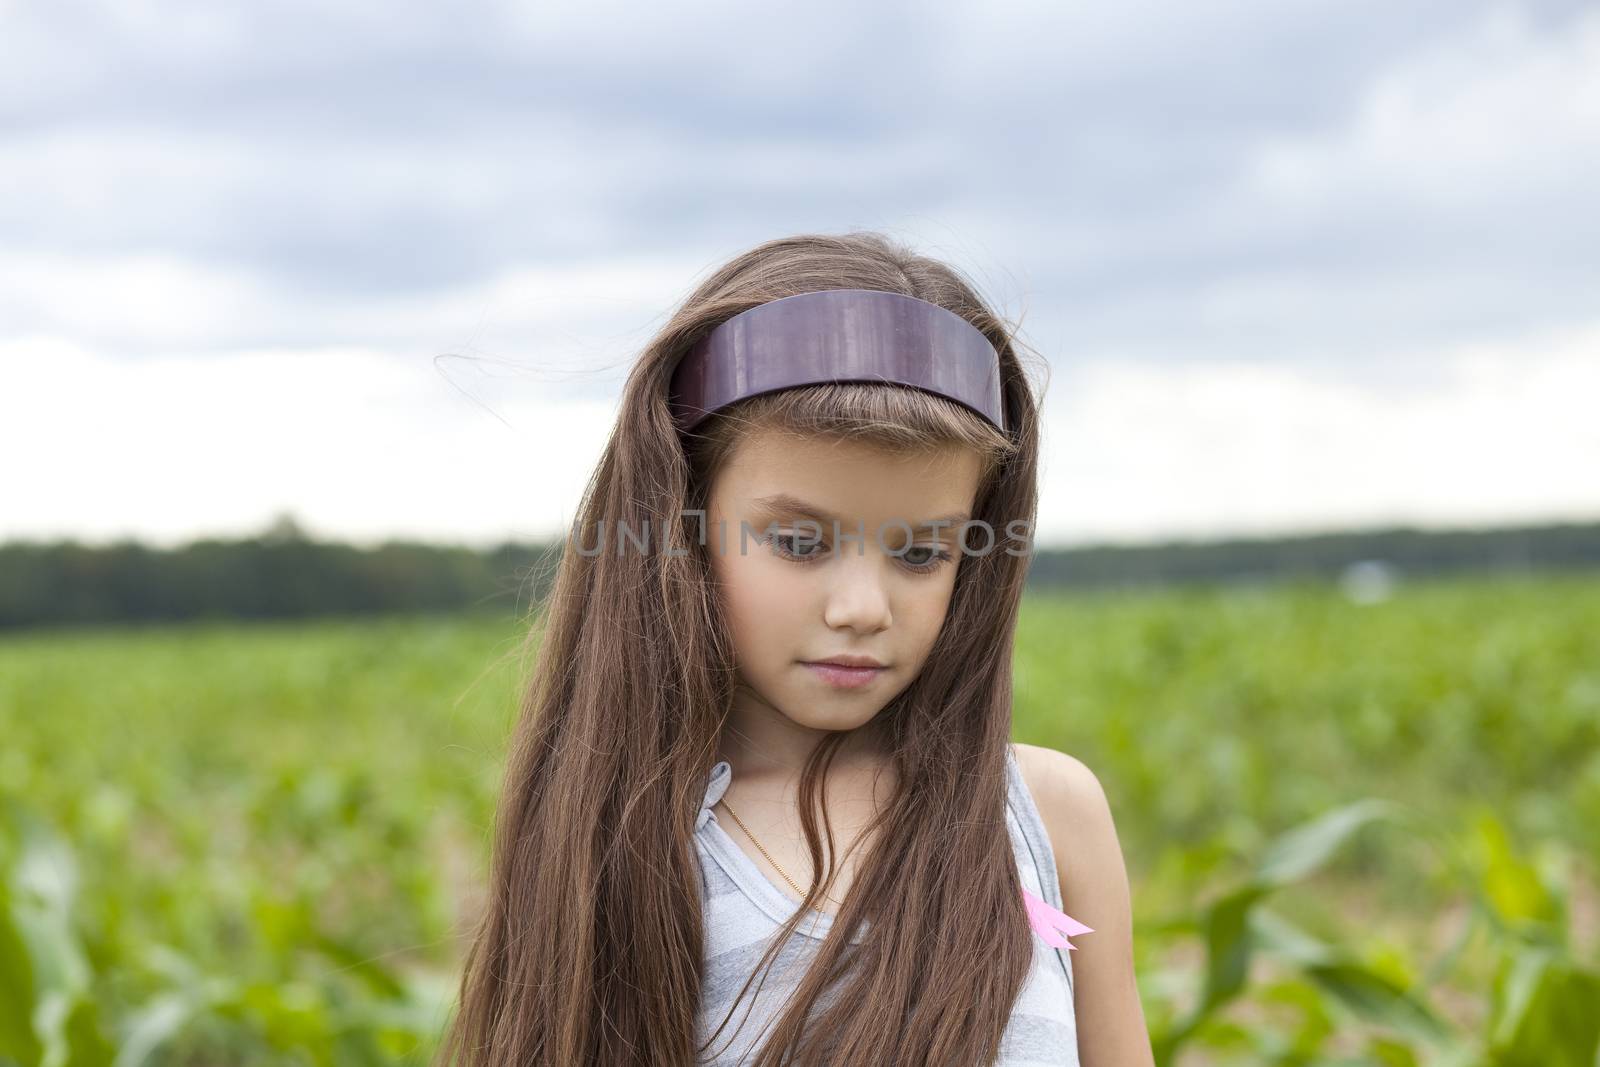 little girl running through the corn field